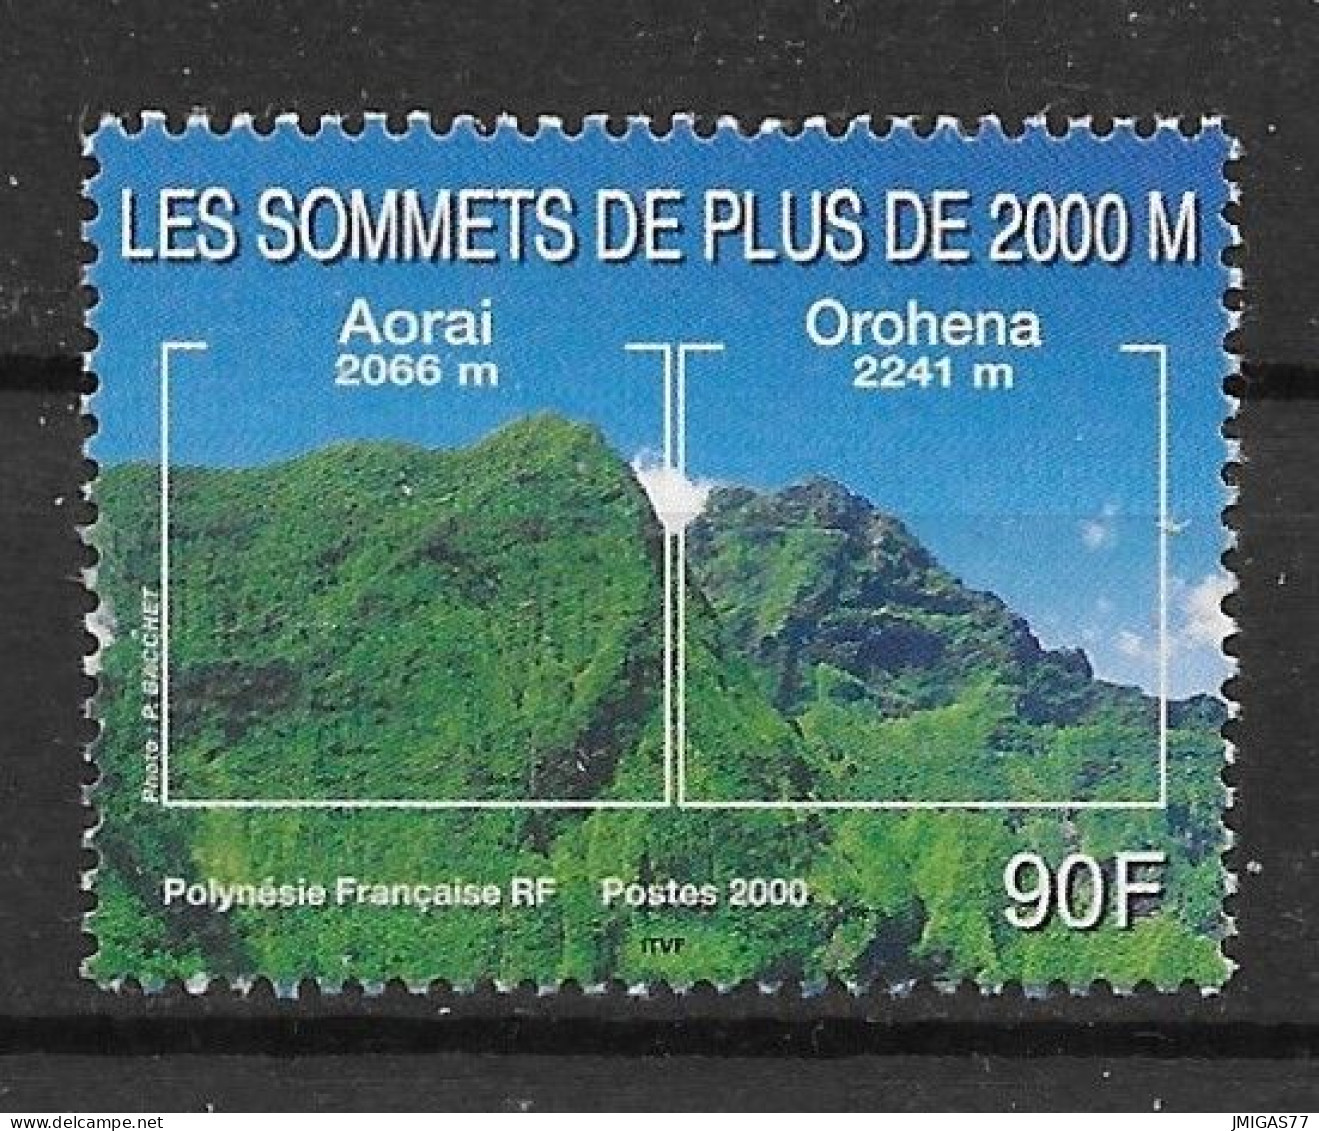 Polynésie Française N° 623 Neuf ** MNH - Ungebraucht